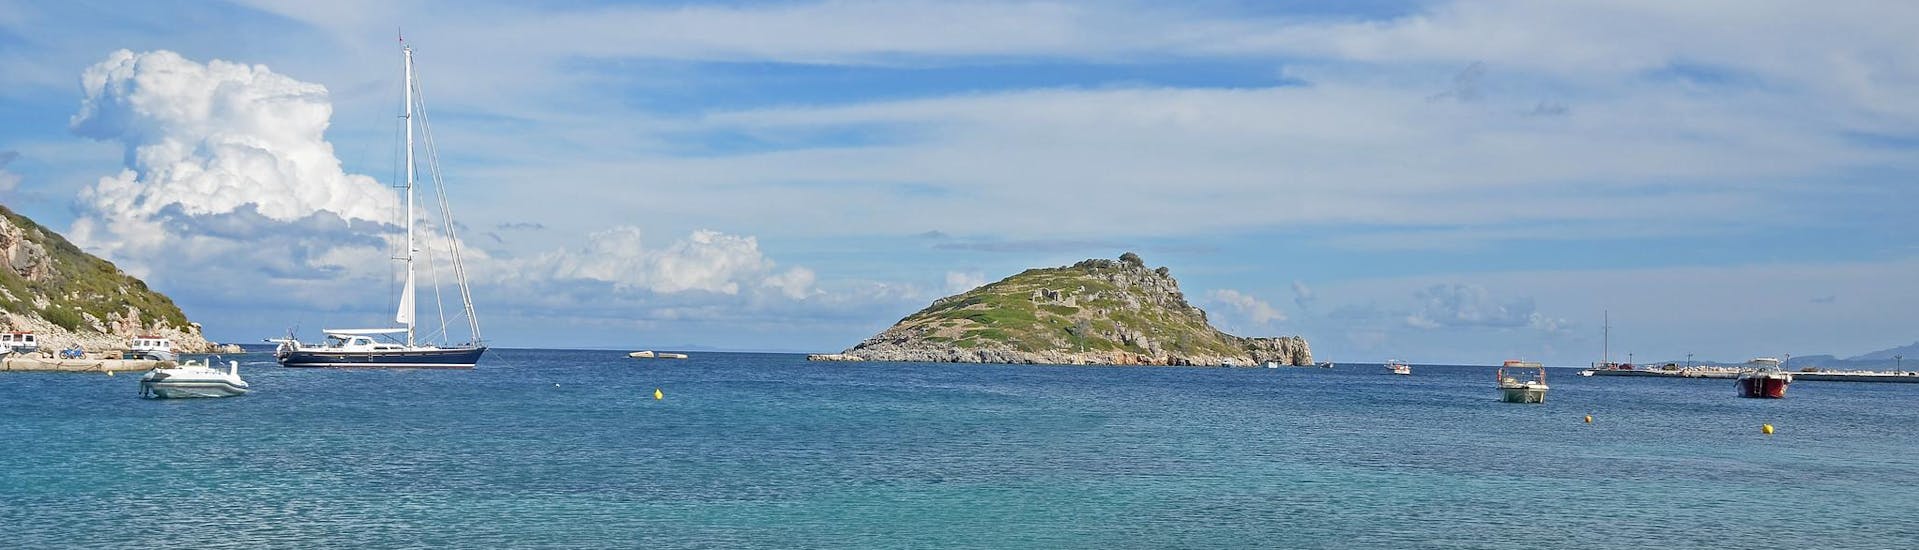 Il porto di Agios Nikolaos a Zakynthos, punto di partenza per le escursioni in barca nelle Isole Ionie.